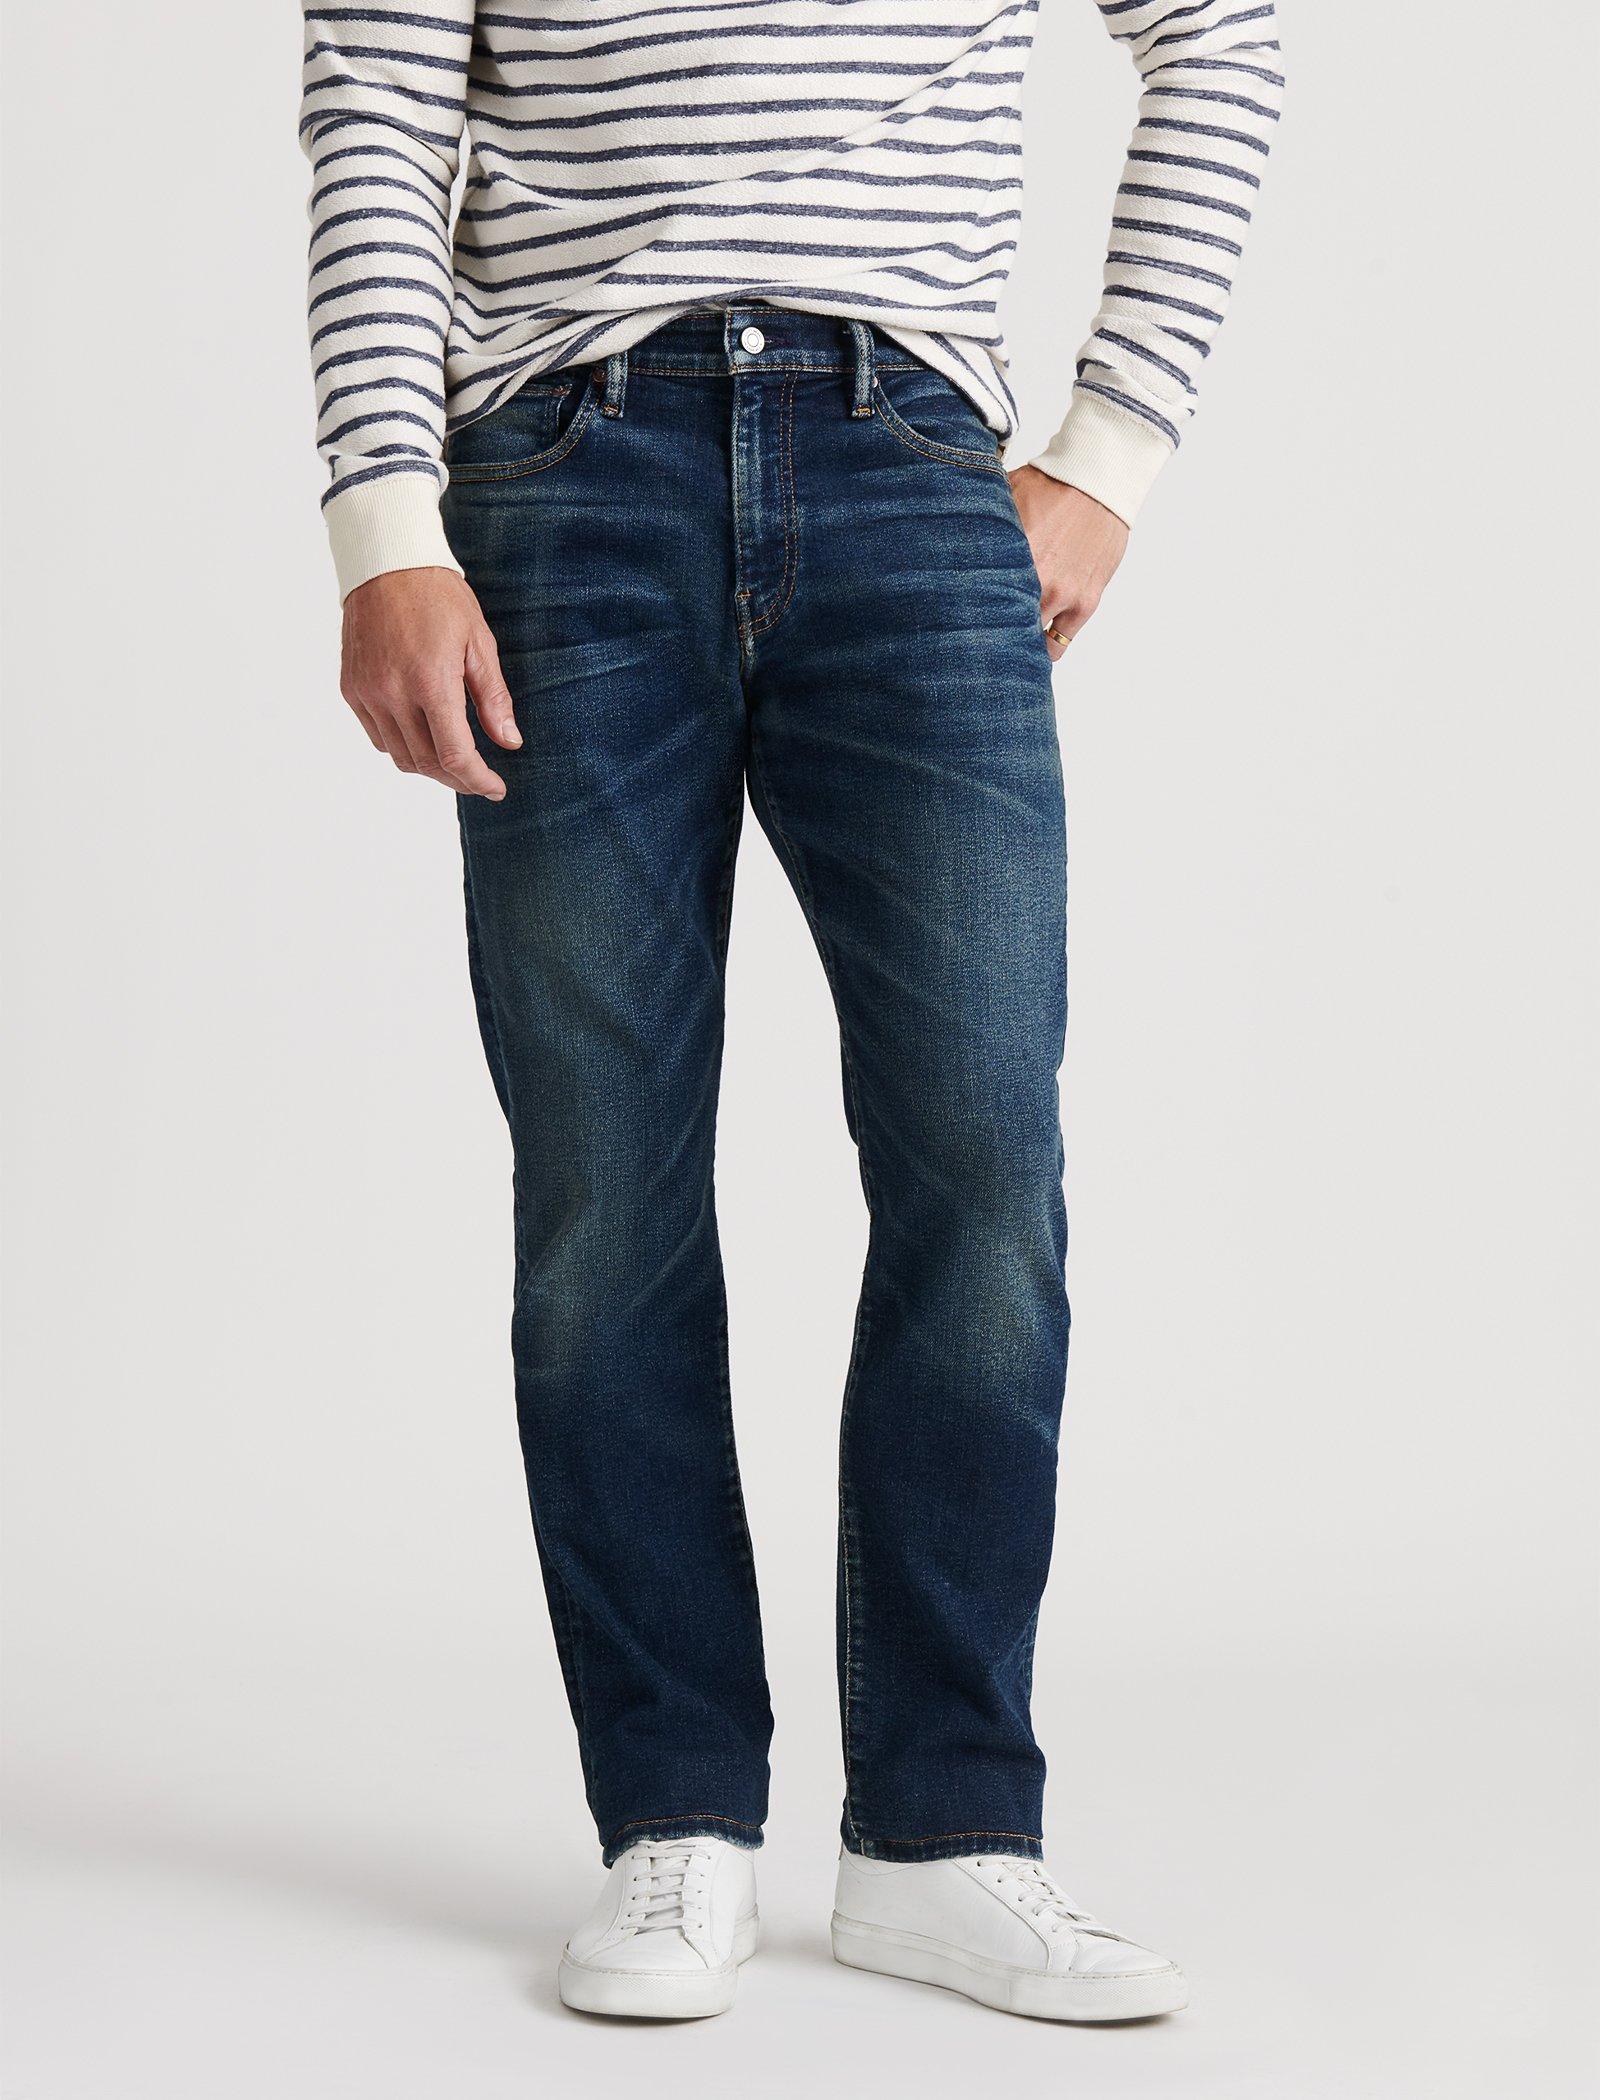 lucky brand men's slim jeans